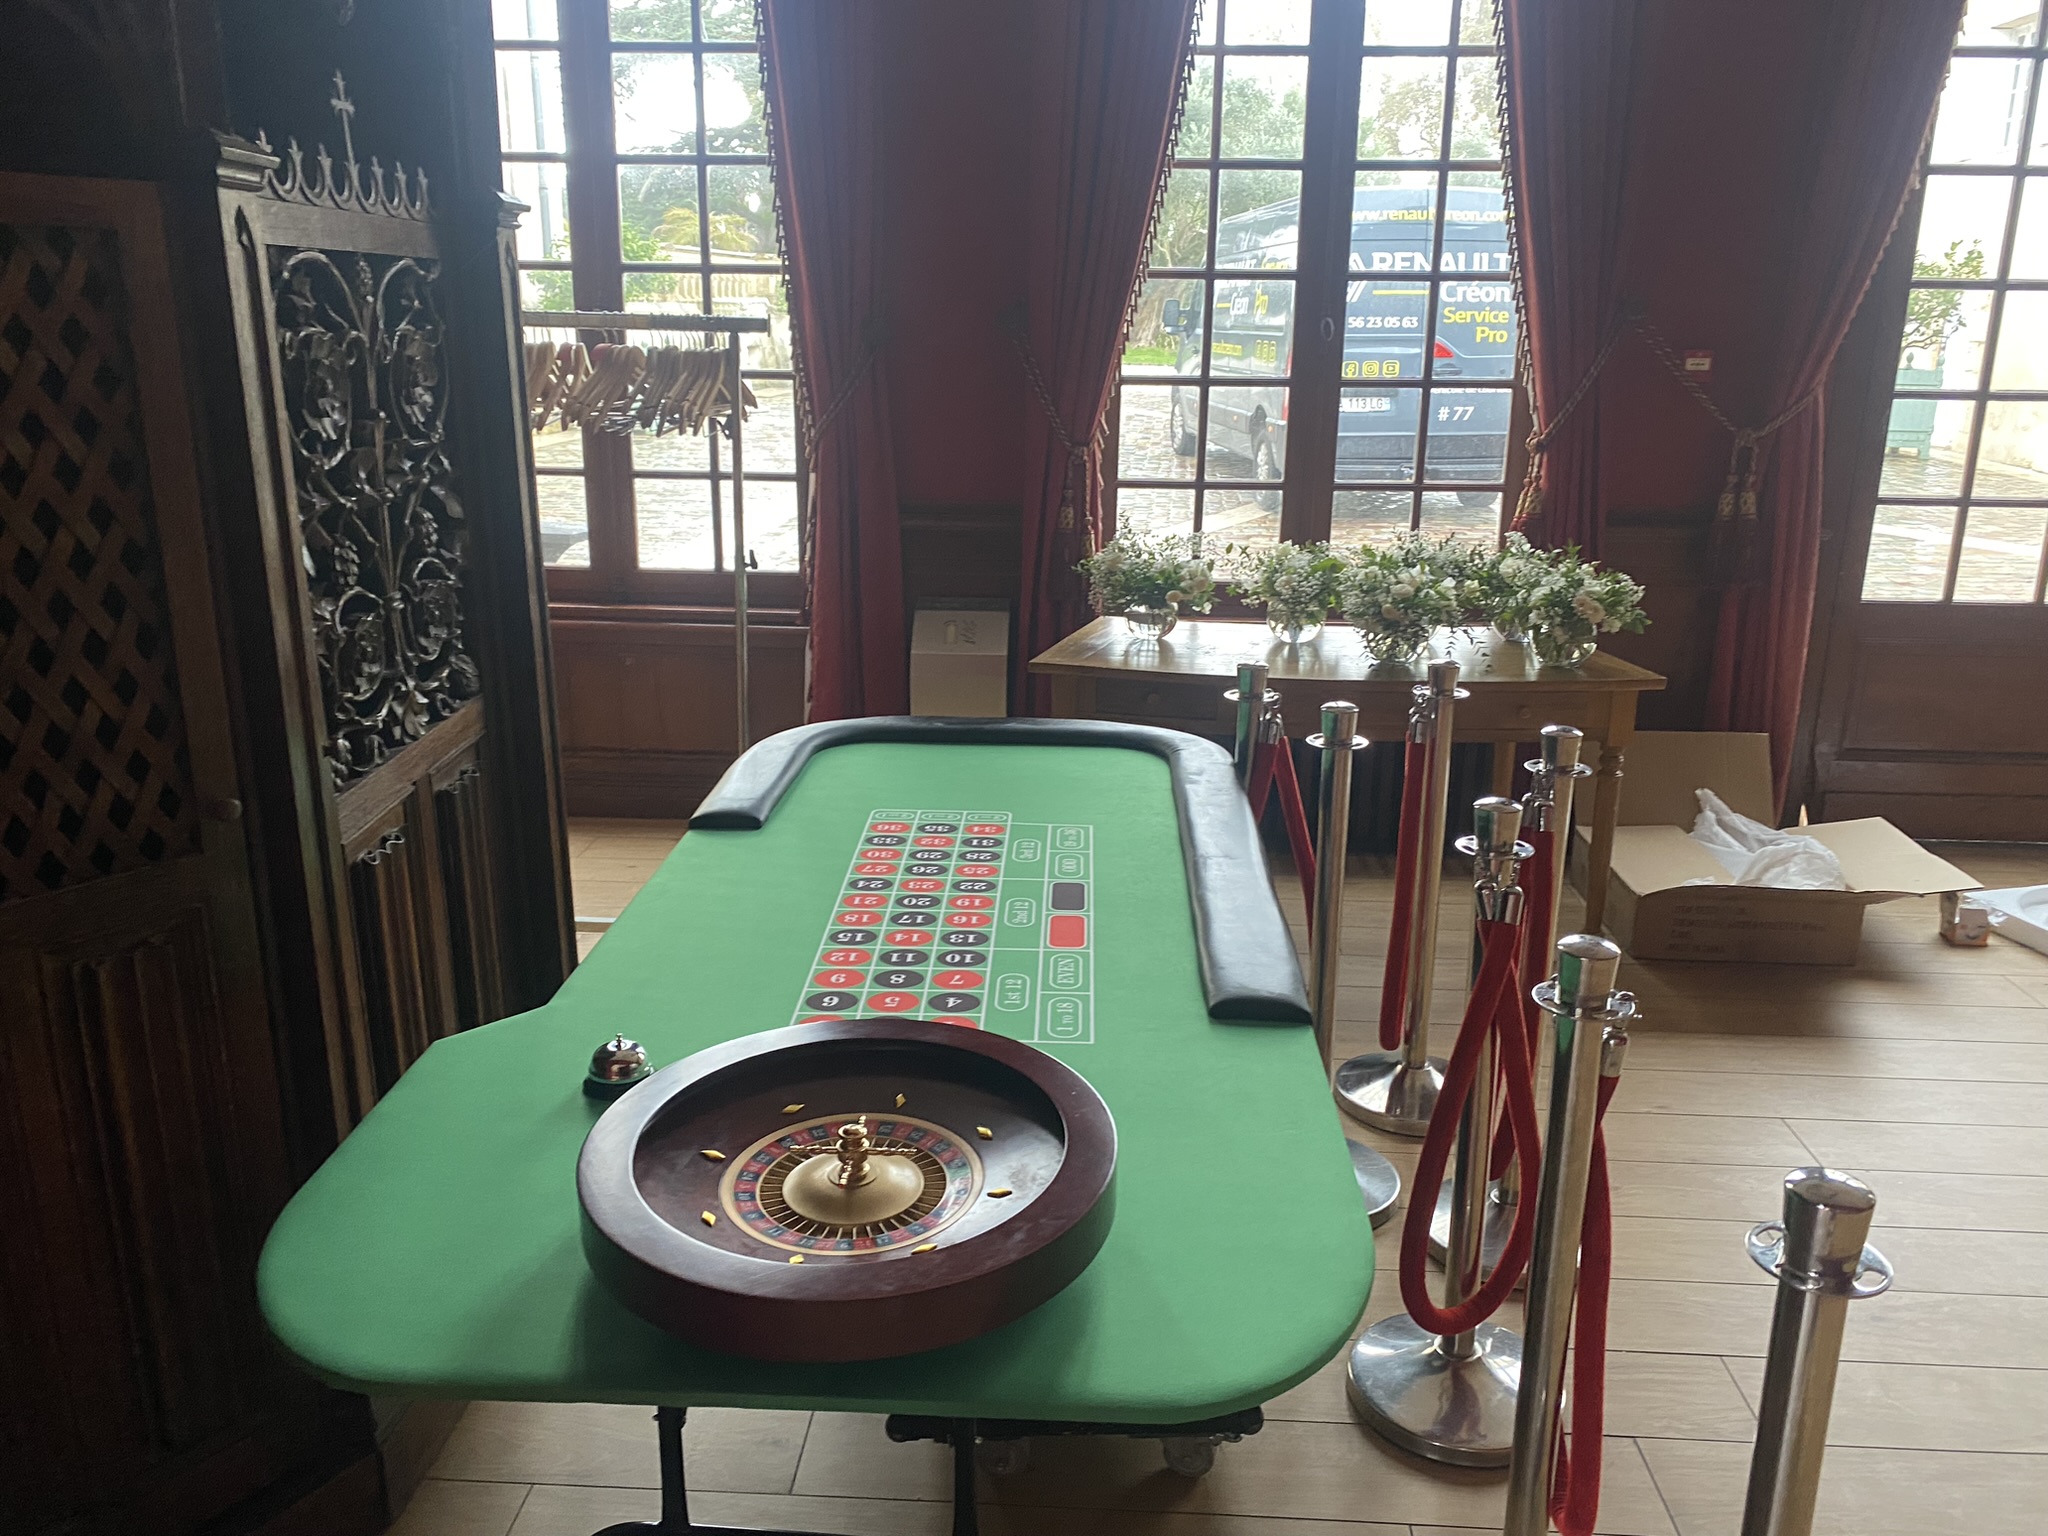 Location Table de Roulette Casino avec Croupier